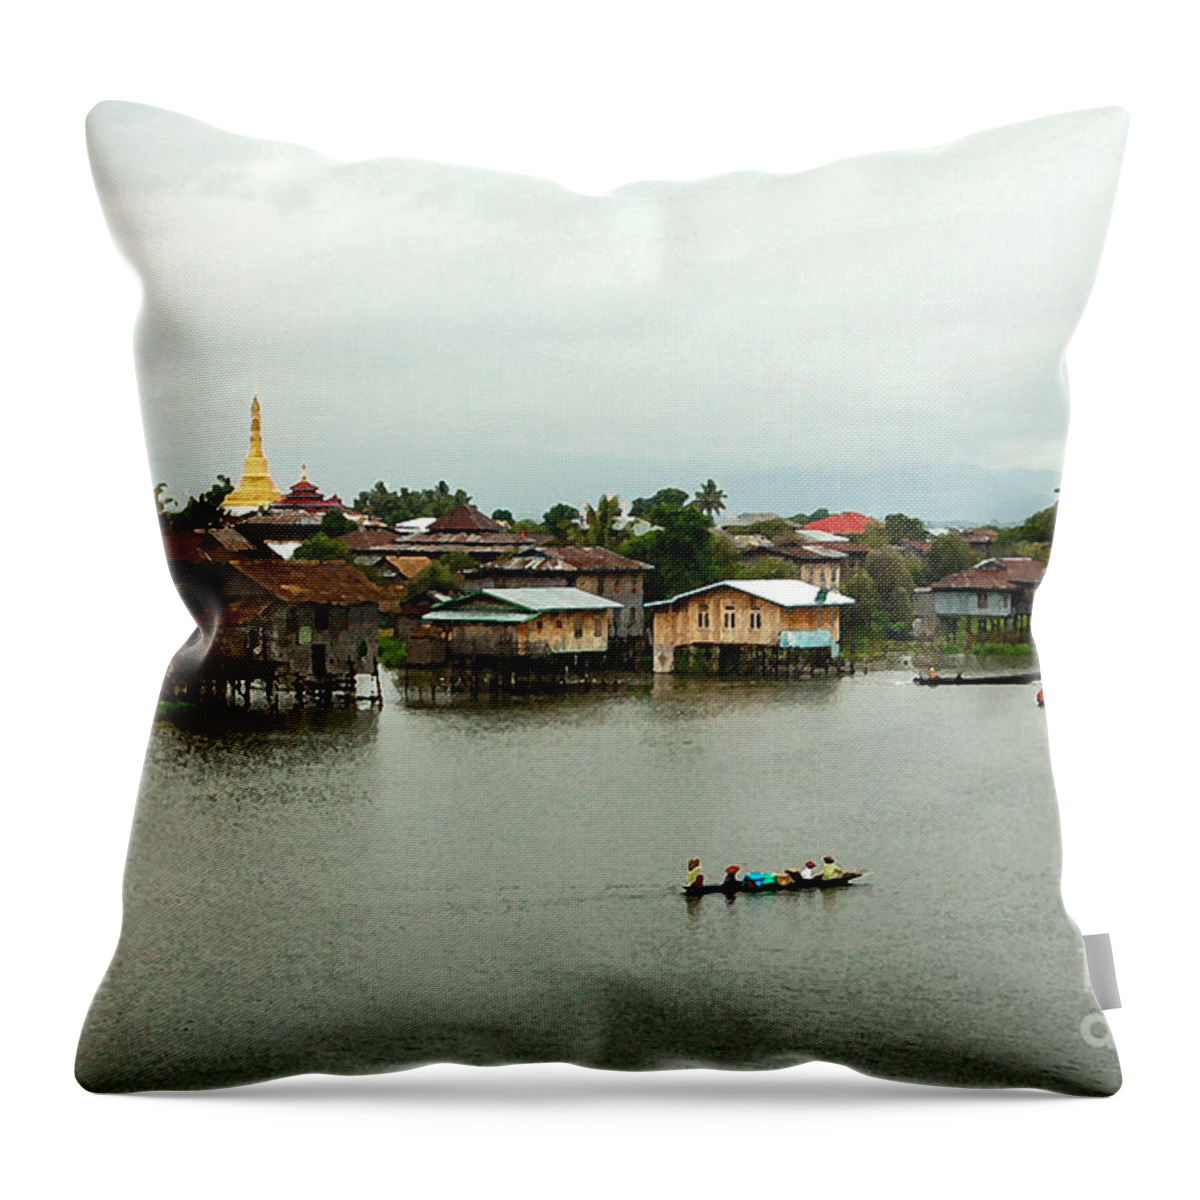 Ricardmn Throw Pillow featuring the photograph Stilt Houses and Pagodas by RicardMN Photography